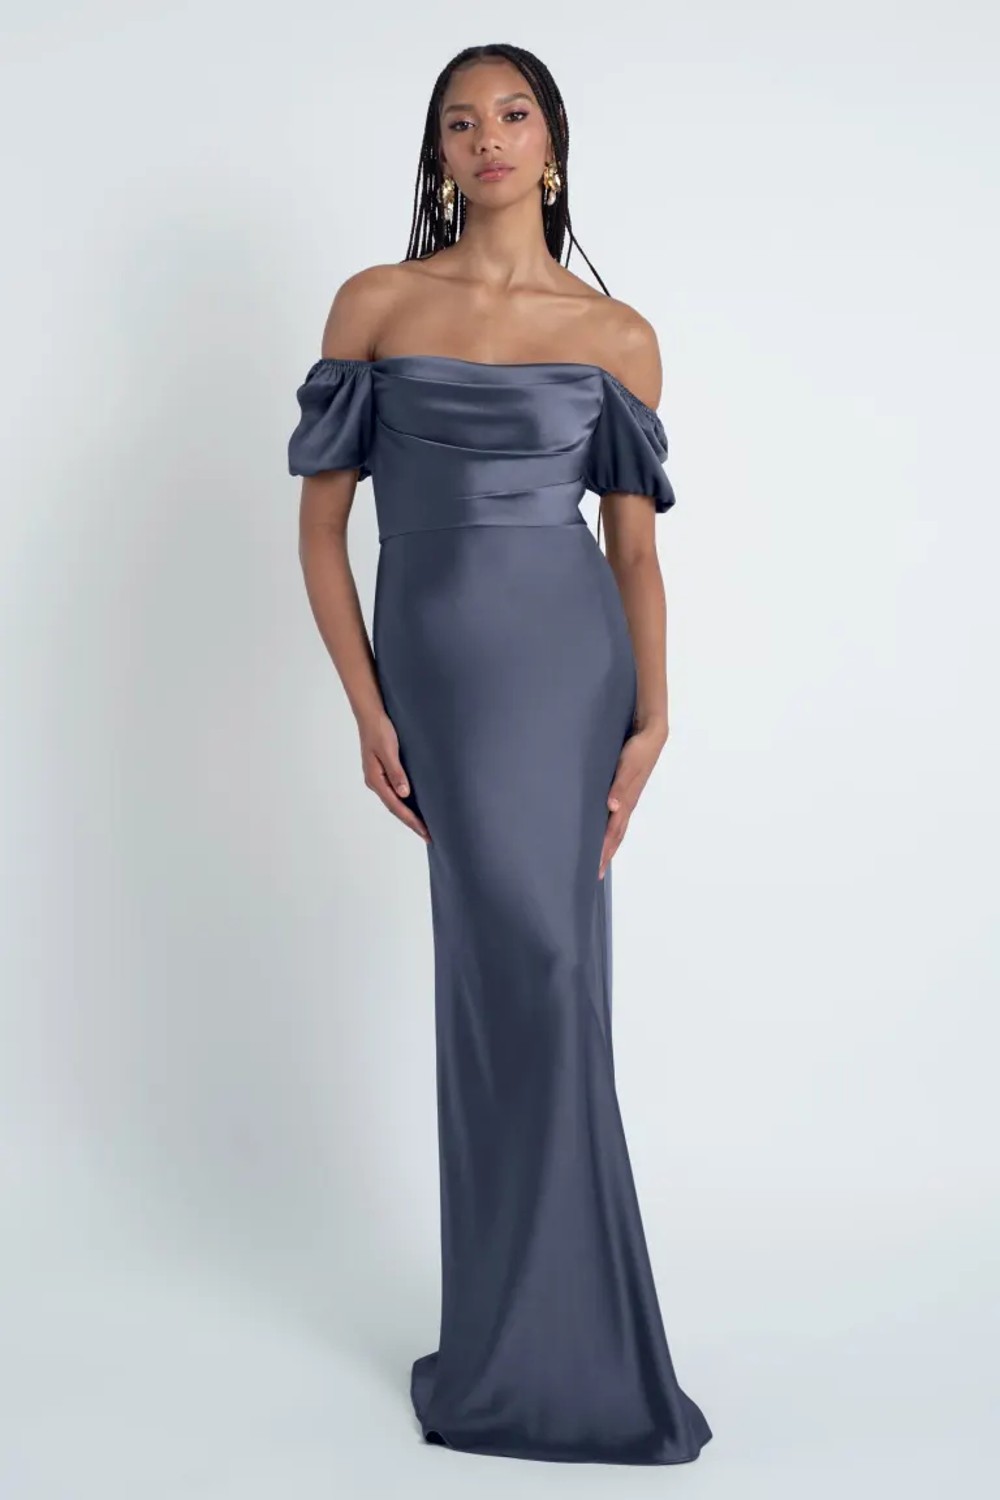 Try Before You Buy Eliana Bridesmaid Dress by Jenny Yoo